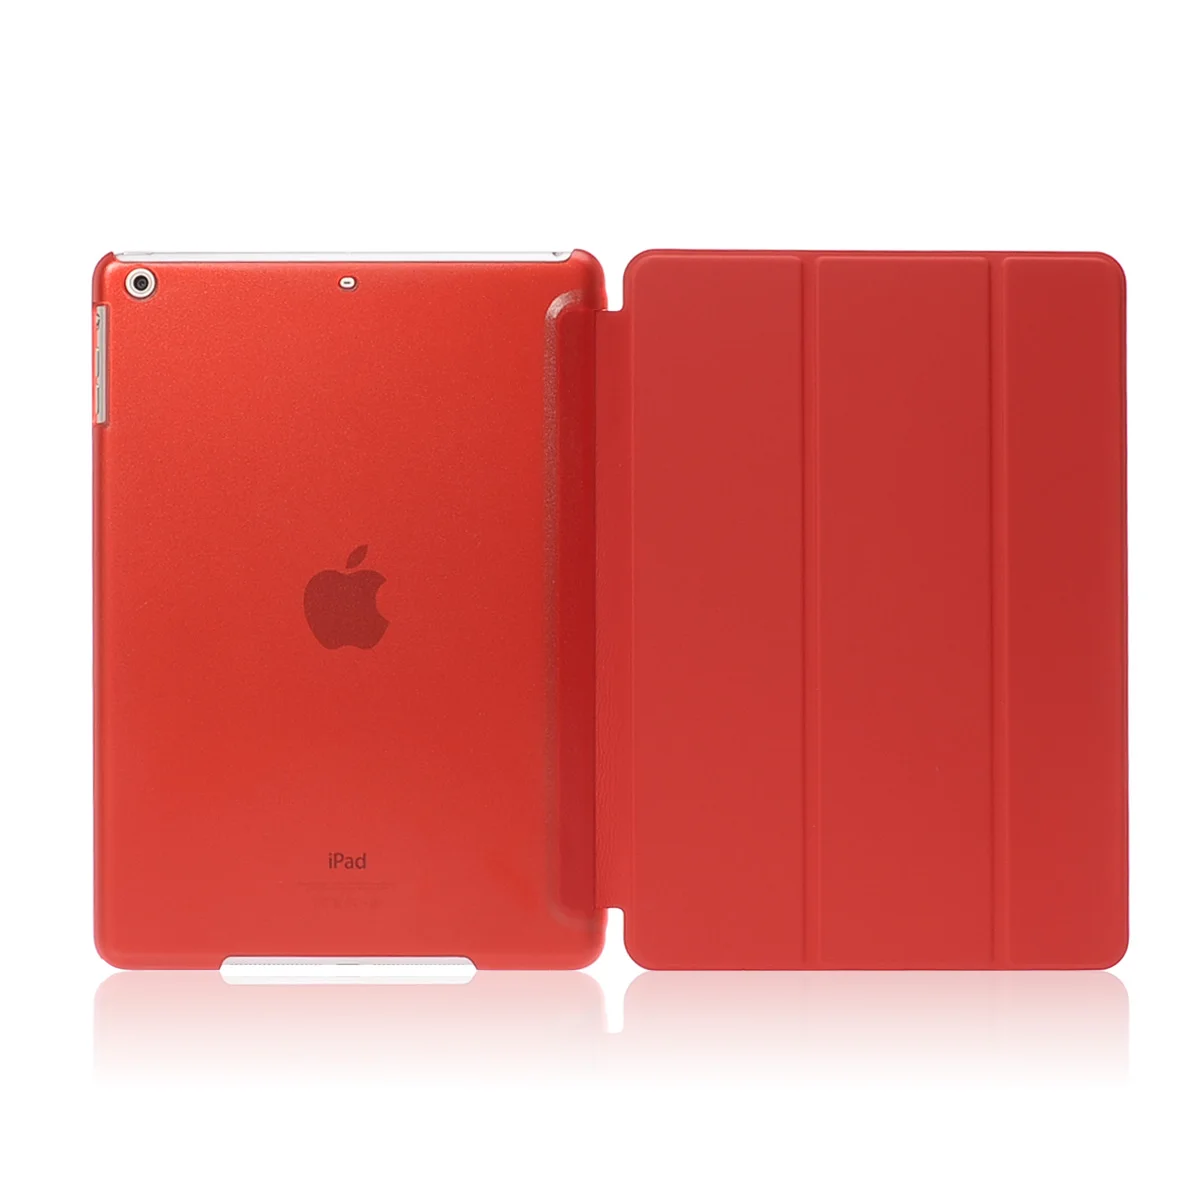 Роскошный противоударный умный кожаный чехол-подставка для планшета Apple Ipad Air 9,7 дюймов для I Pad 5 IPad5 Coque capa para